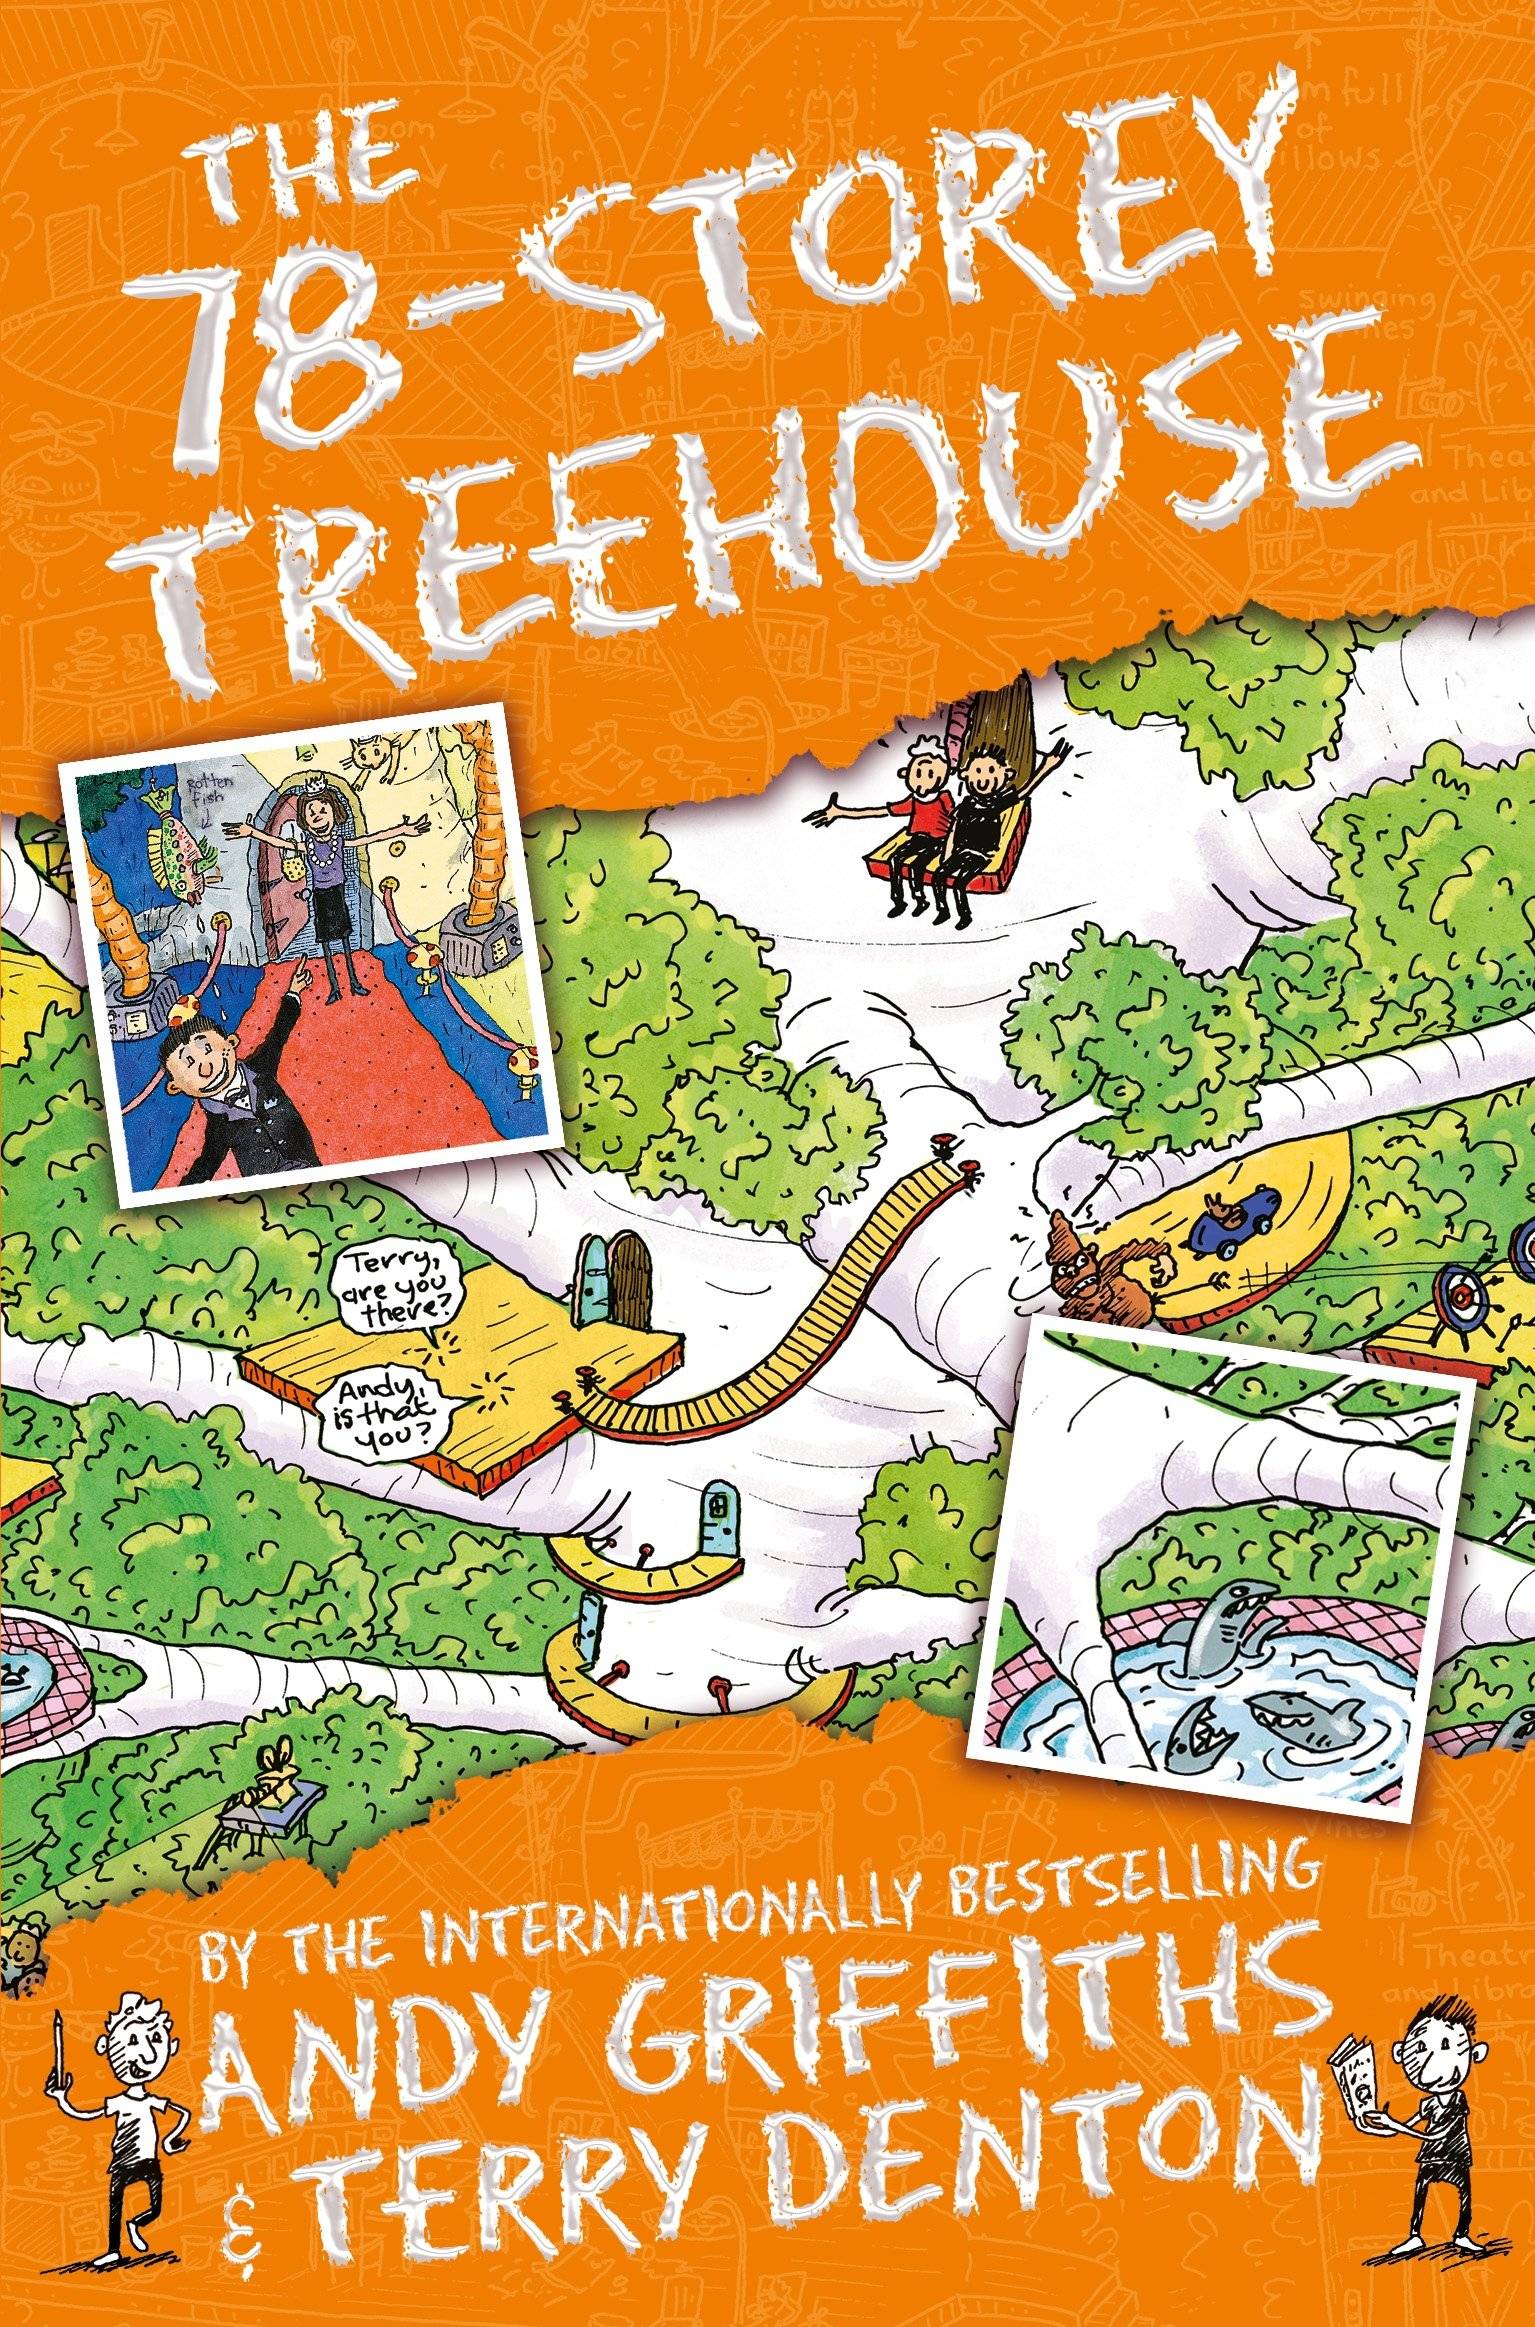 IMG : The 78-storey treehouse